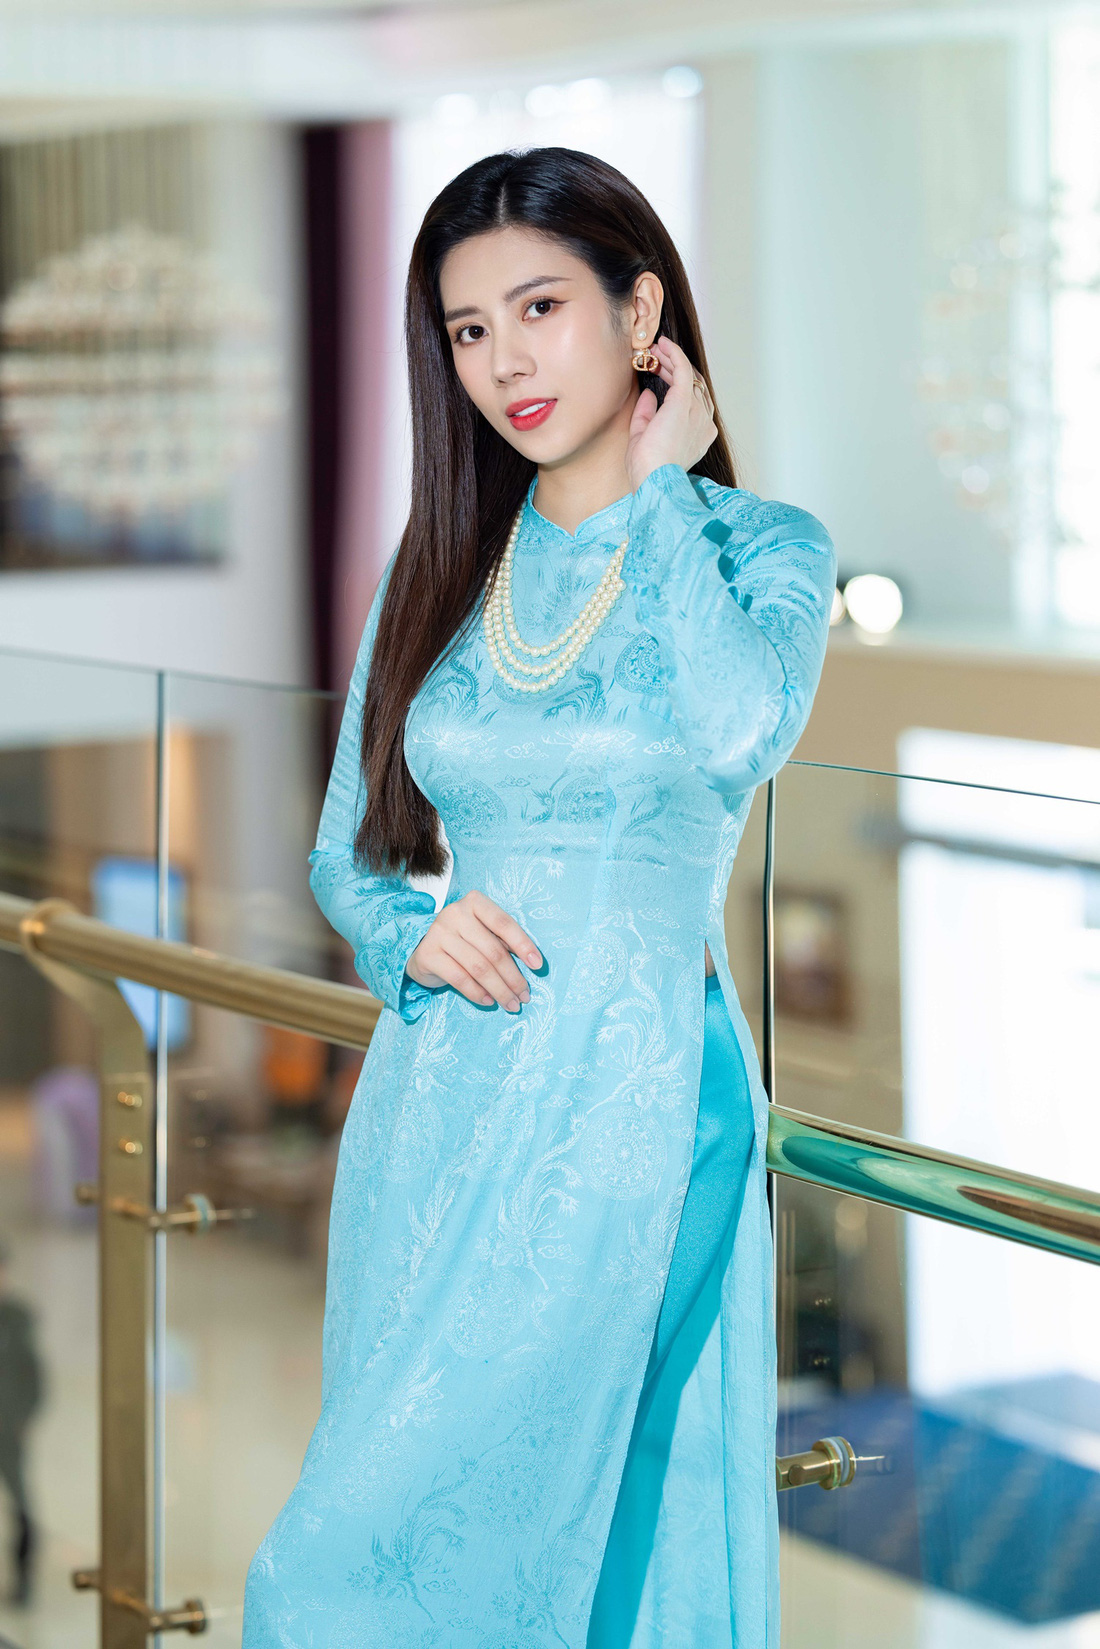 Hoa hậu Dương Yến Nhung nền nã trong tà áo dài làm đại sứ hoạt động thiện nguyện - Ảnh: BTC